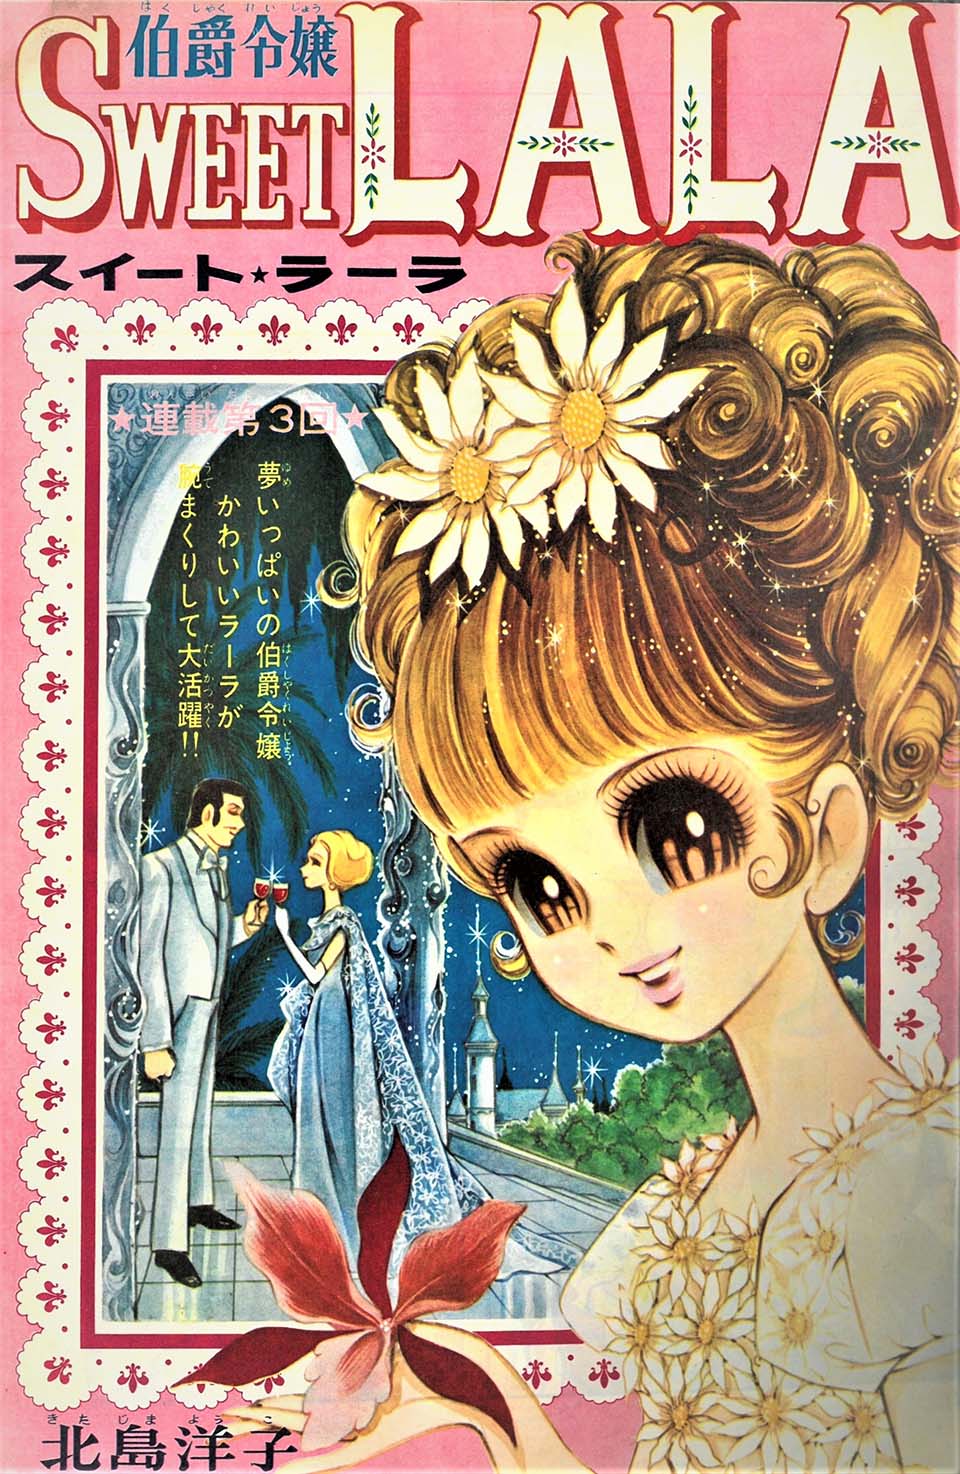 北島洋子「伯爵令嬢スイート★ラーラ」『りぼん』1967年11月号